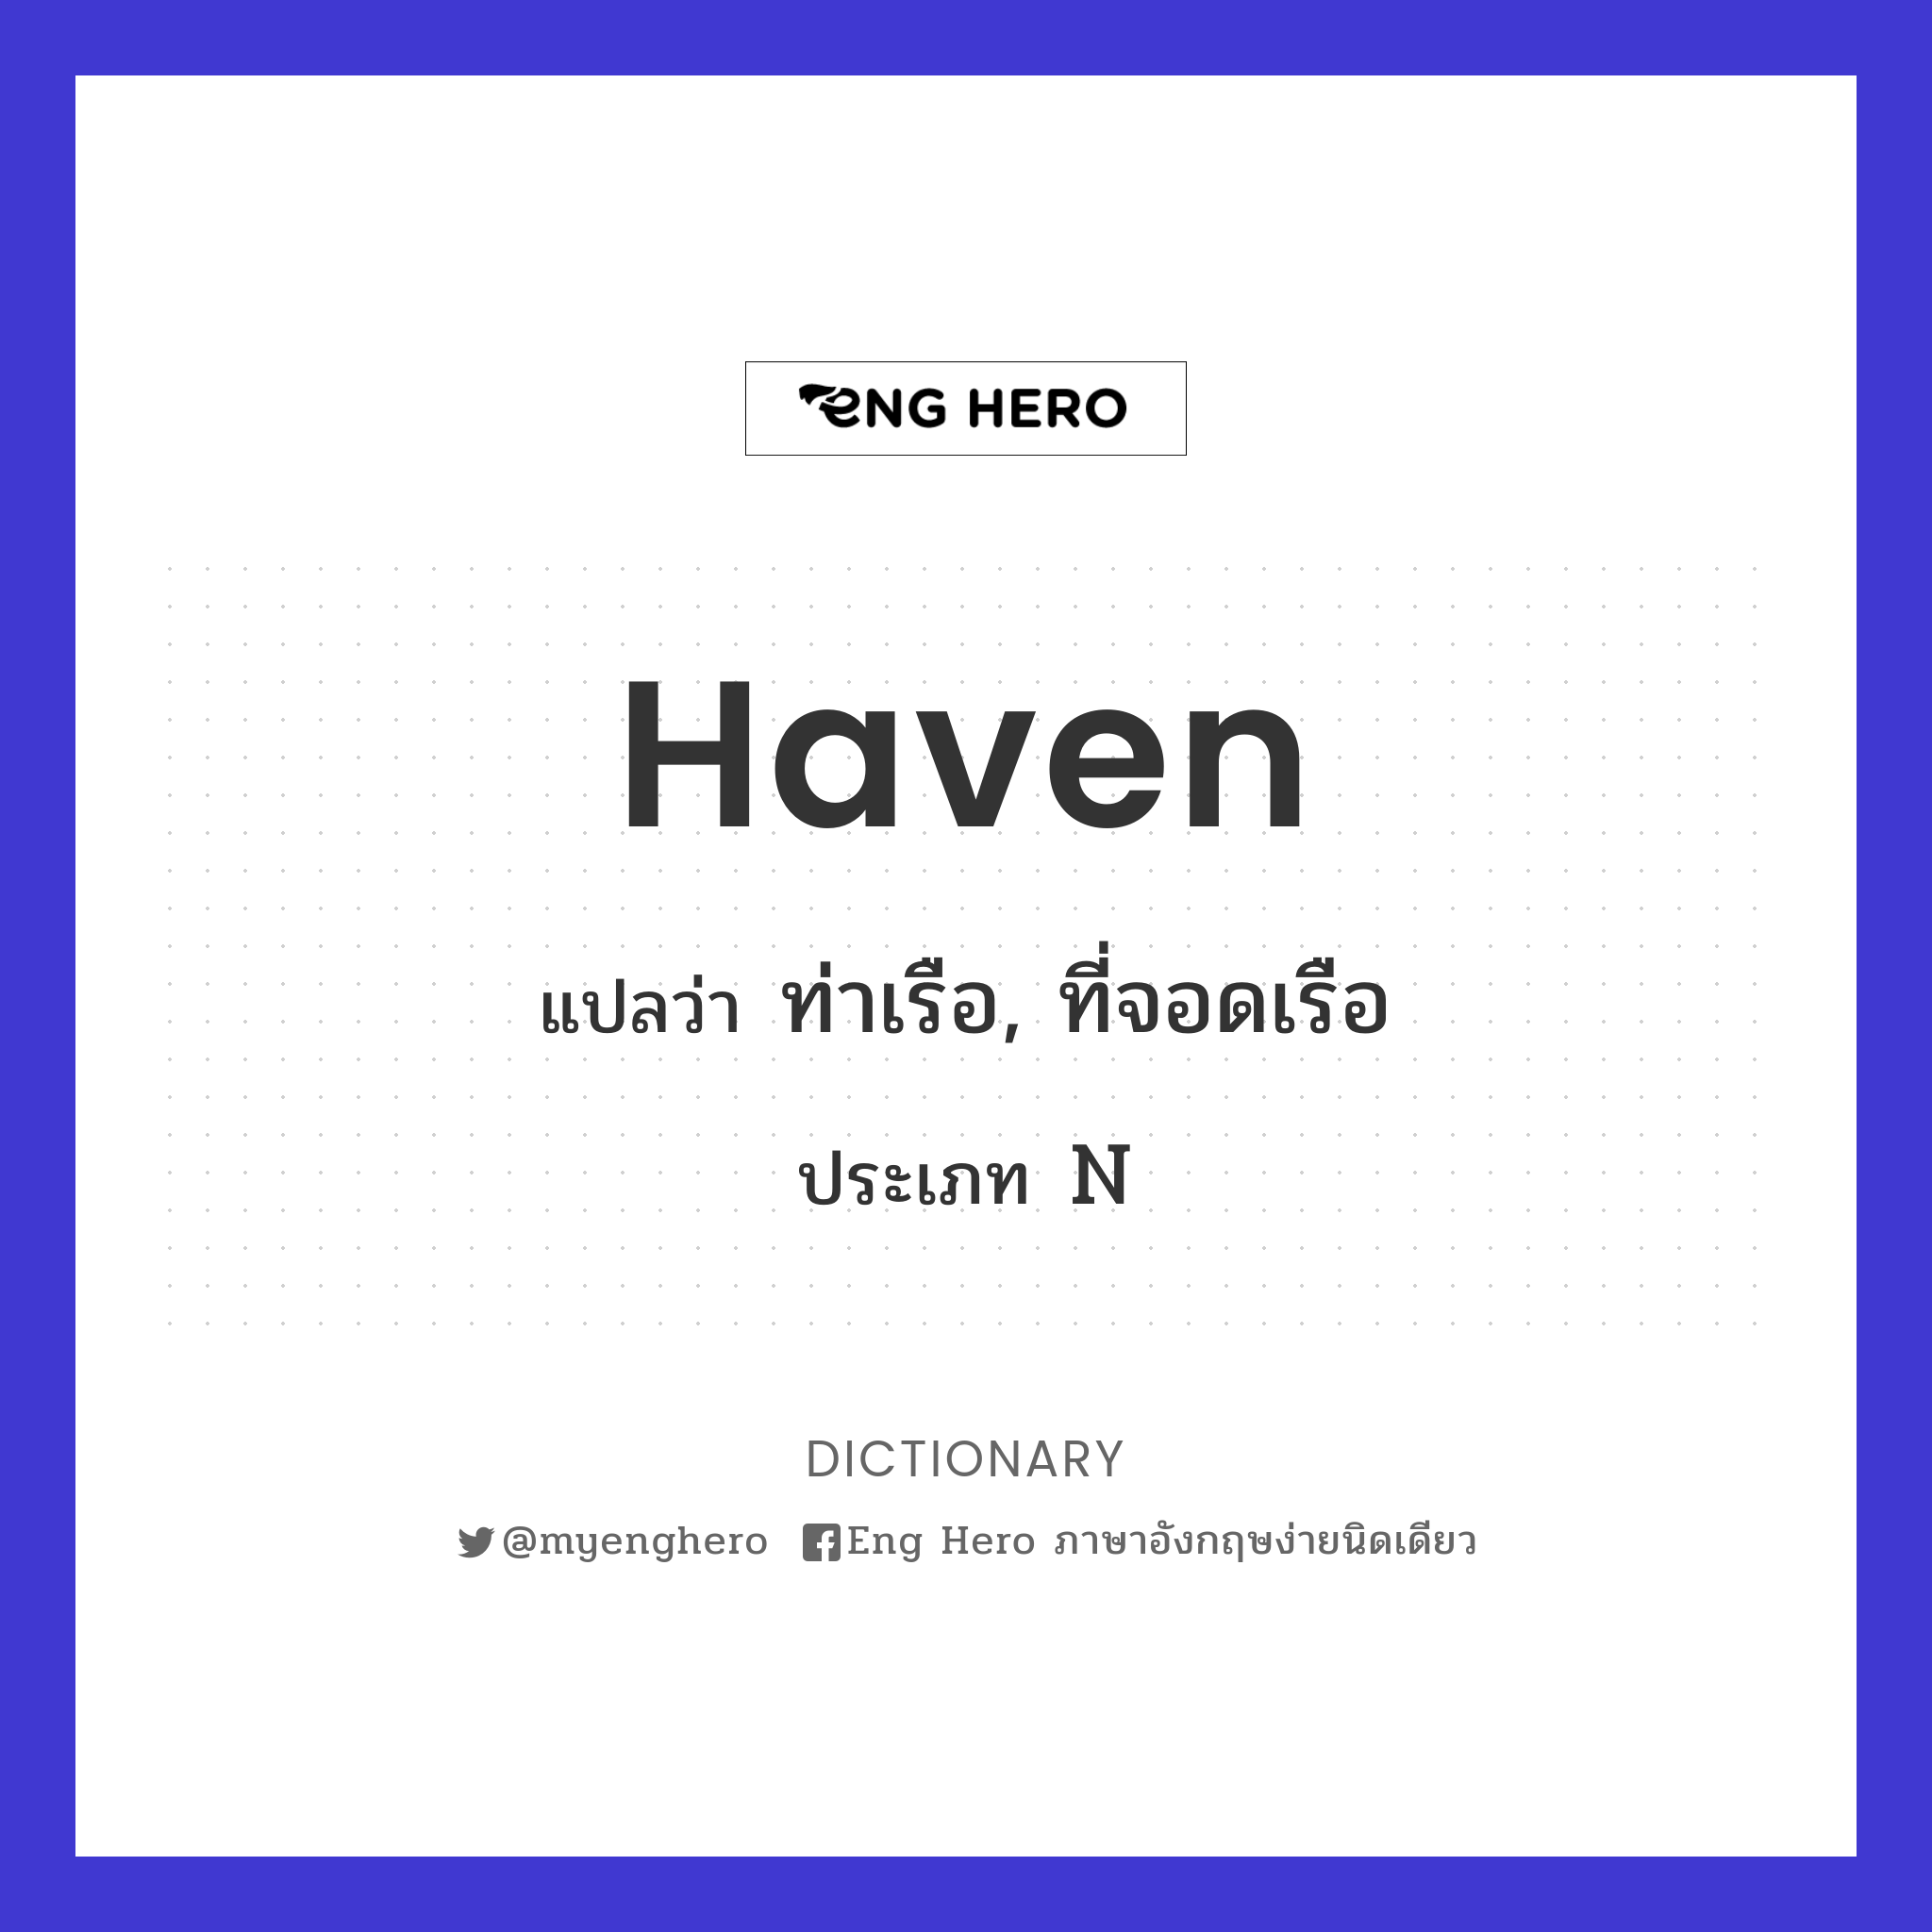 haven